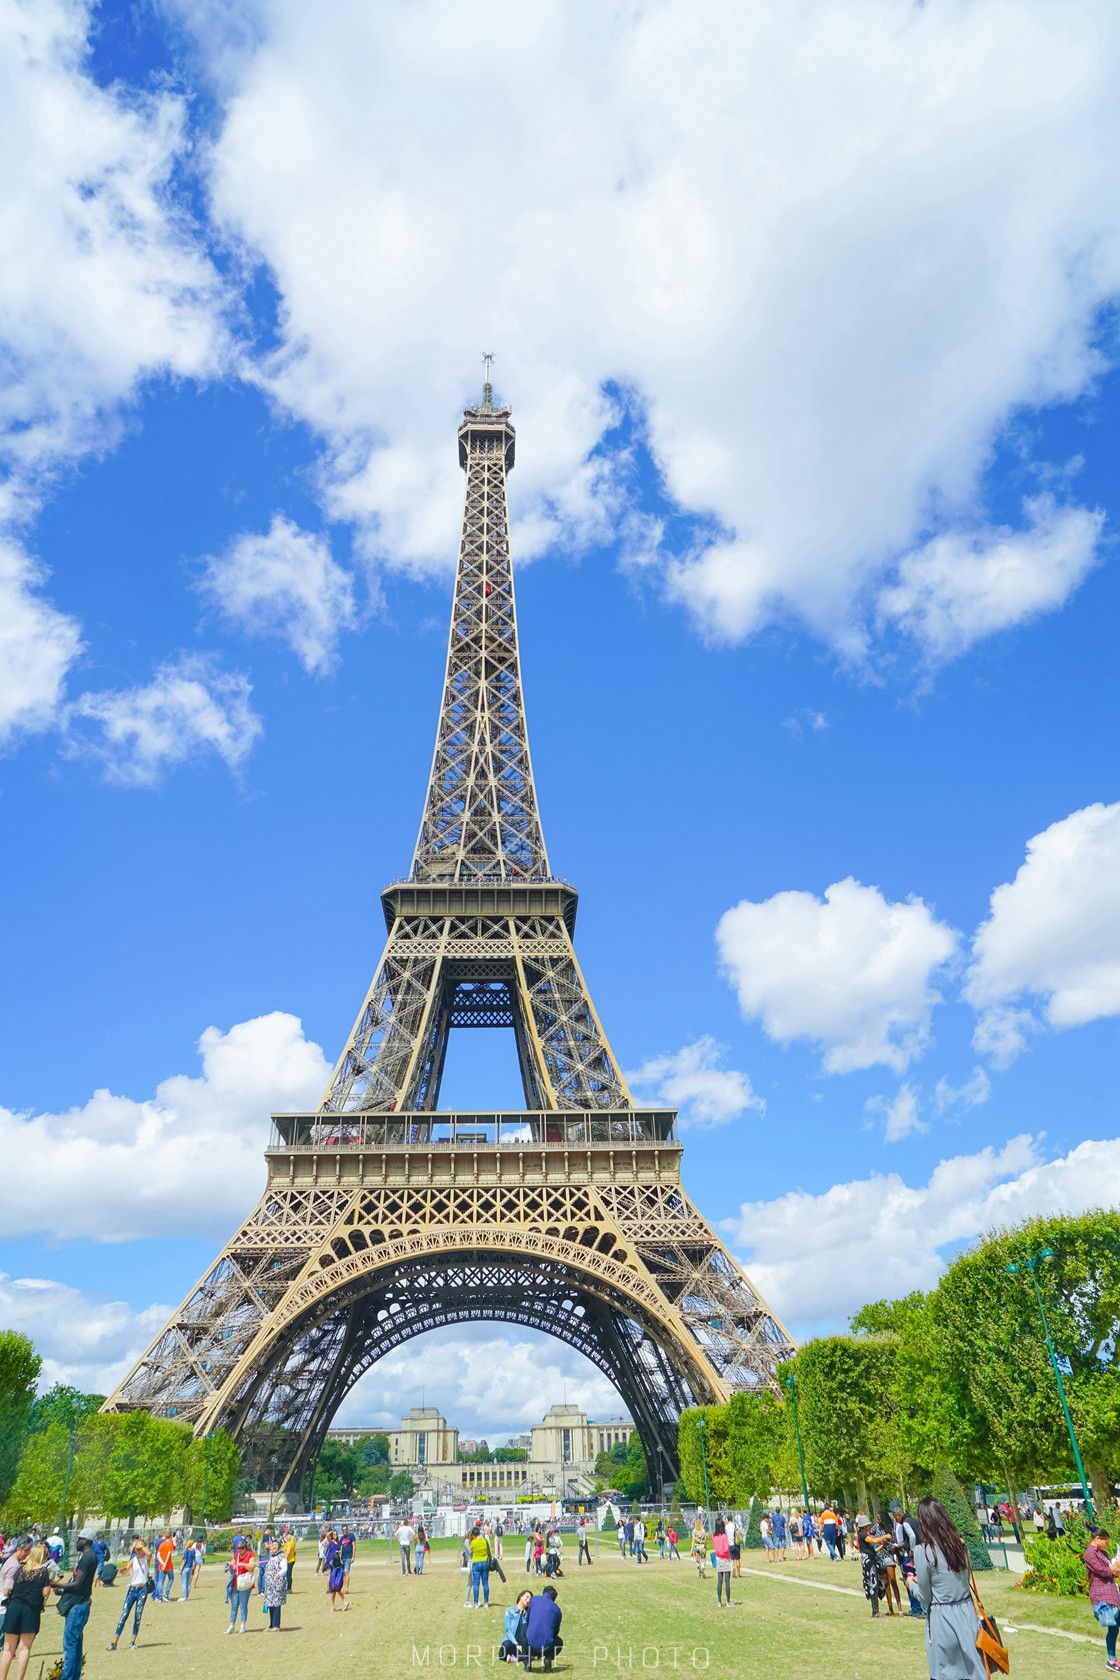 为什么巴黎埃菲尔铁塔是浪漫的代言词?